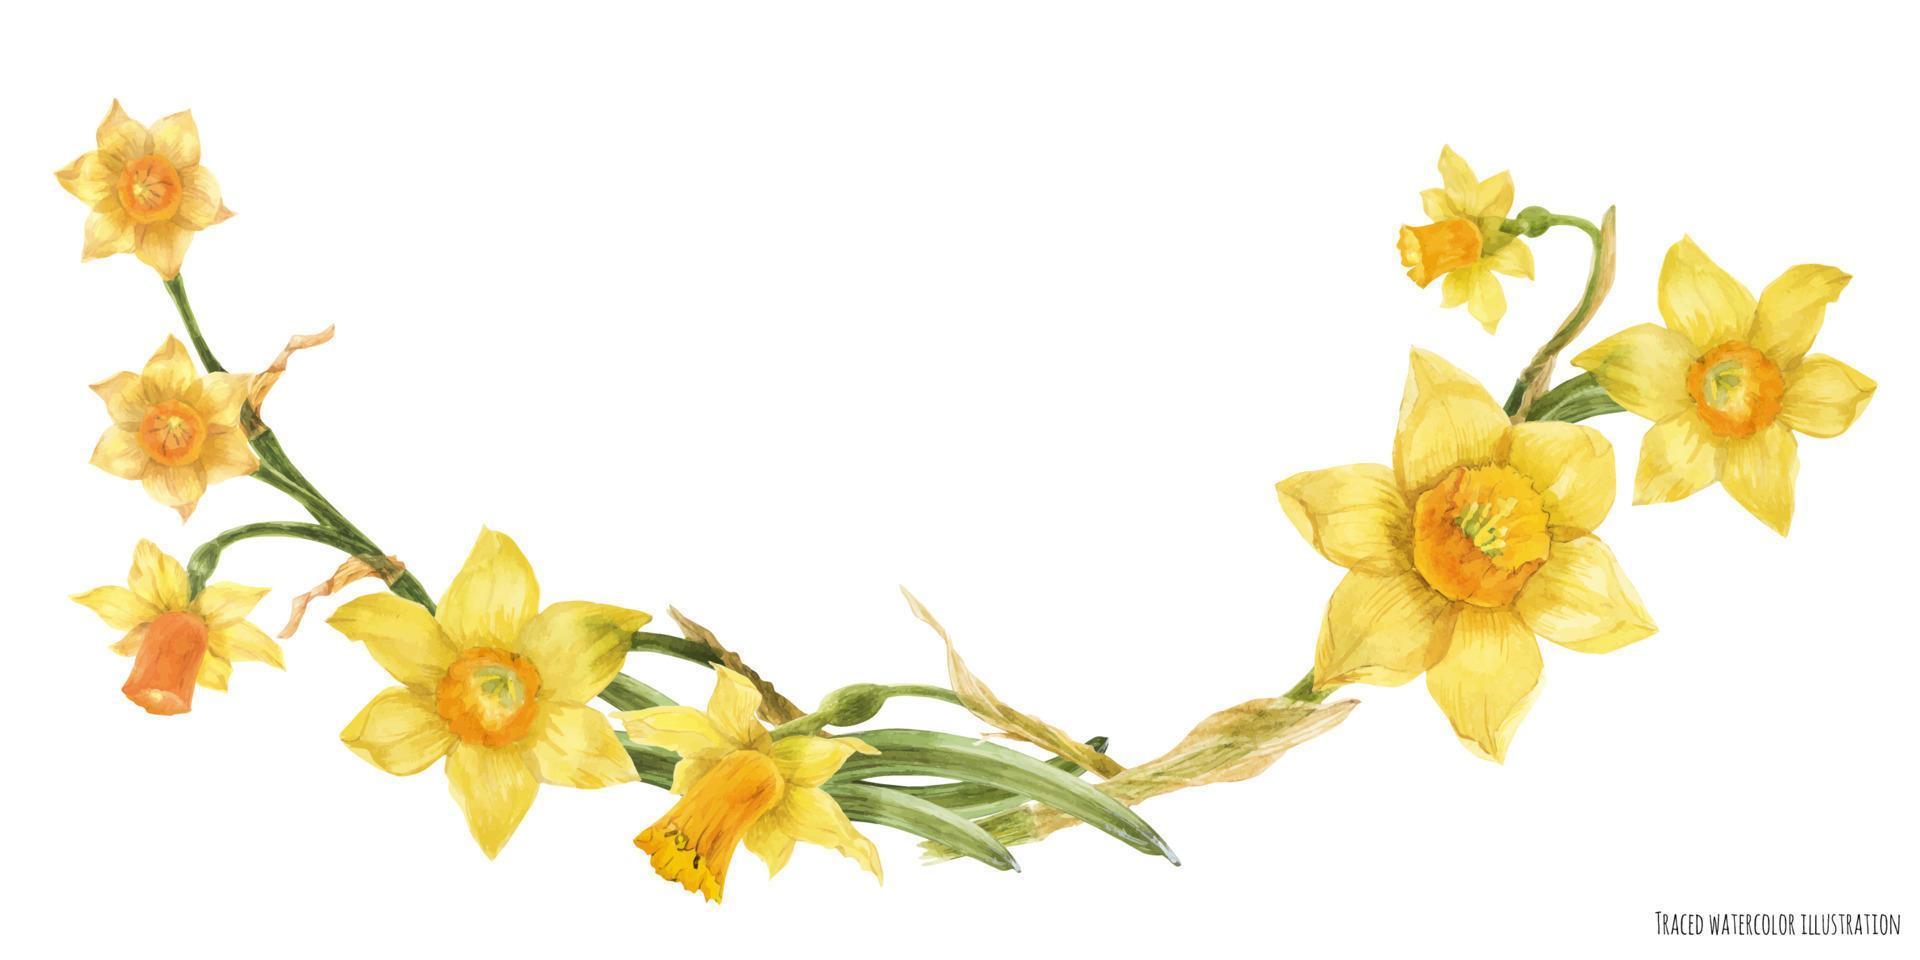 arco decorativo em aquarela com flores amarelas de narciso vetor